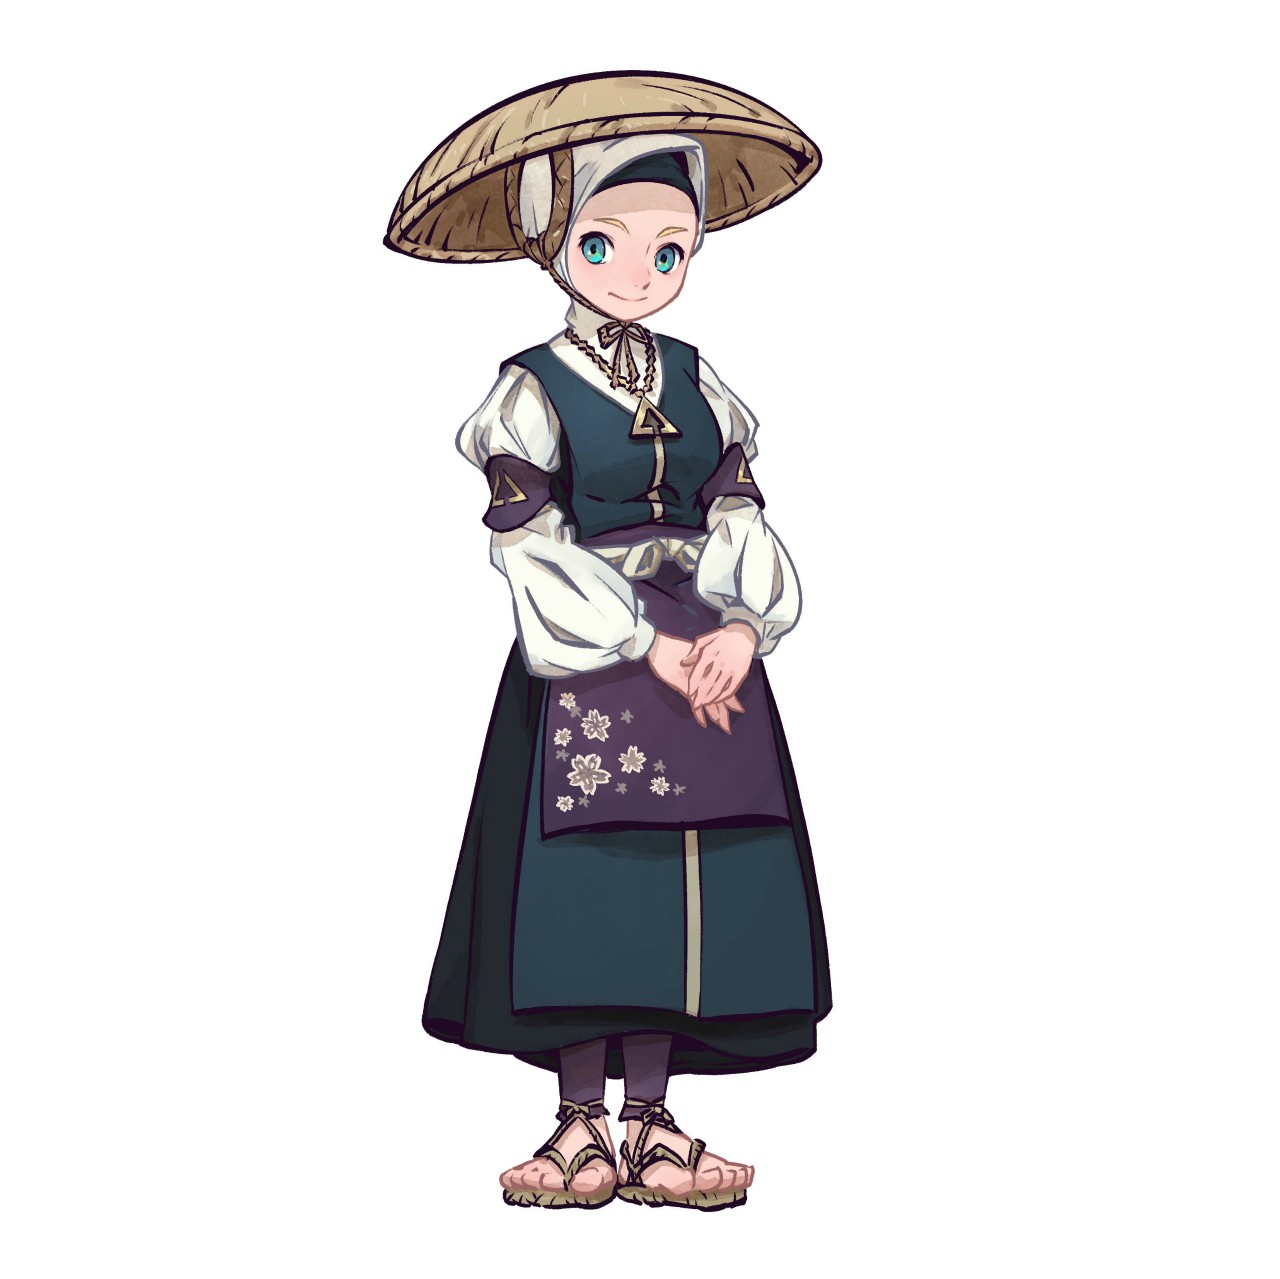 《天穗之咲稻姬》公开登场角色以及制作料理和种稻时所必须的农具